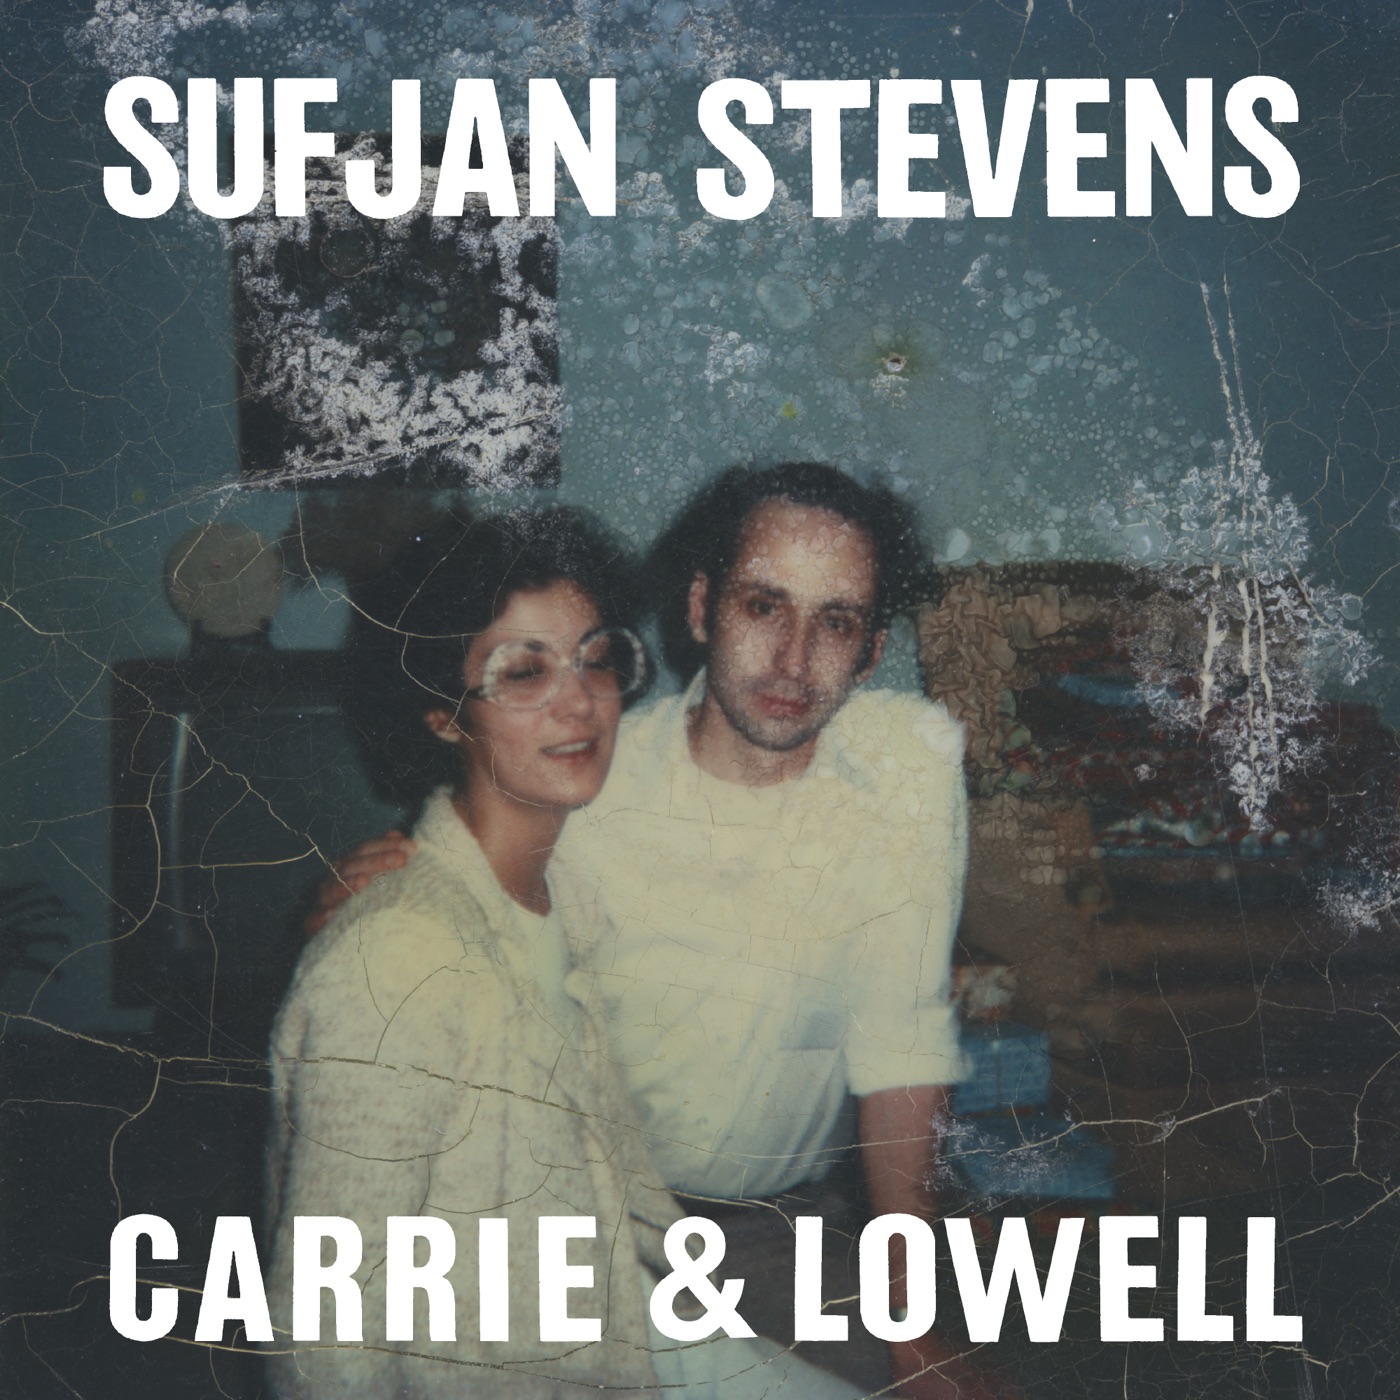 Carrie & Lowell by Sufjan Stevens, Carrie & Lowell